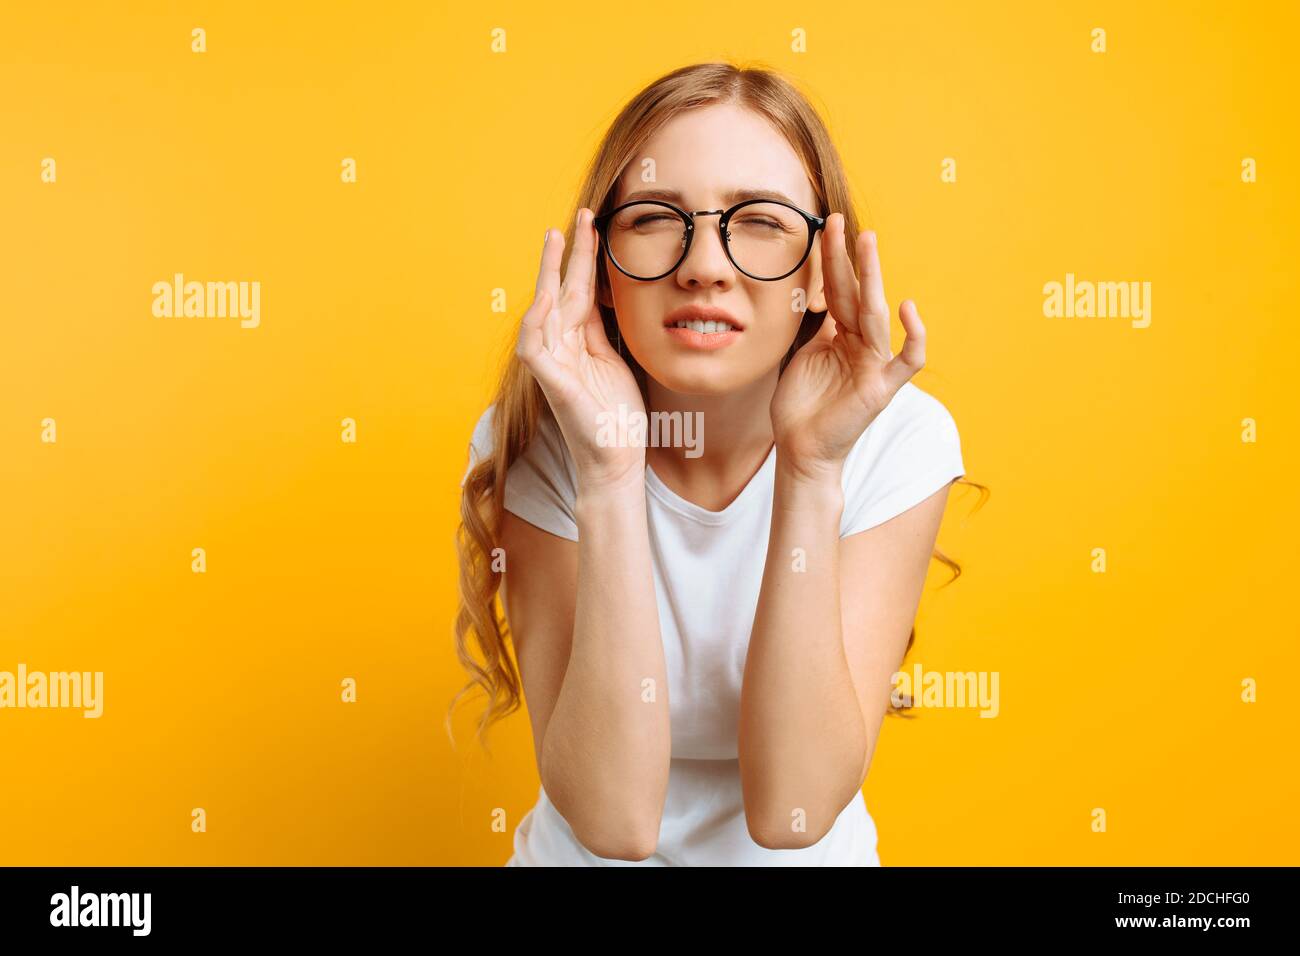 Une fille dans un T-shirt blanc, avec une mauvaise vue porte des lunettes, regardant s'accroupir, essayant de comprendre ce qui est écrit sur un fond jaune Banque D'Images